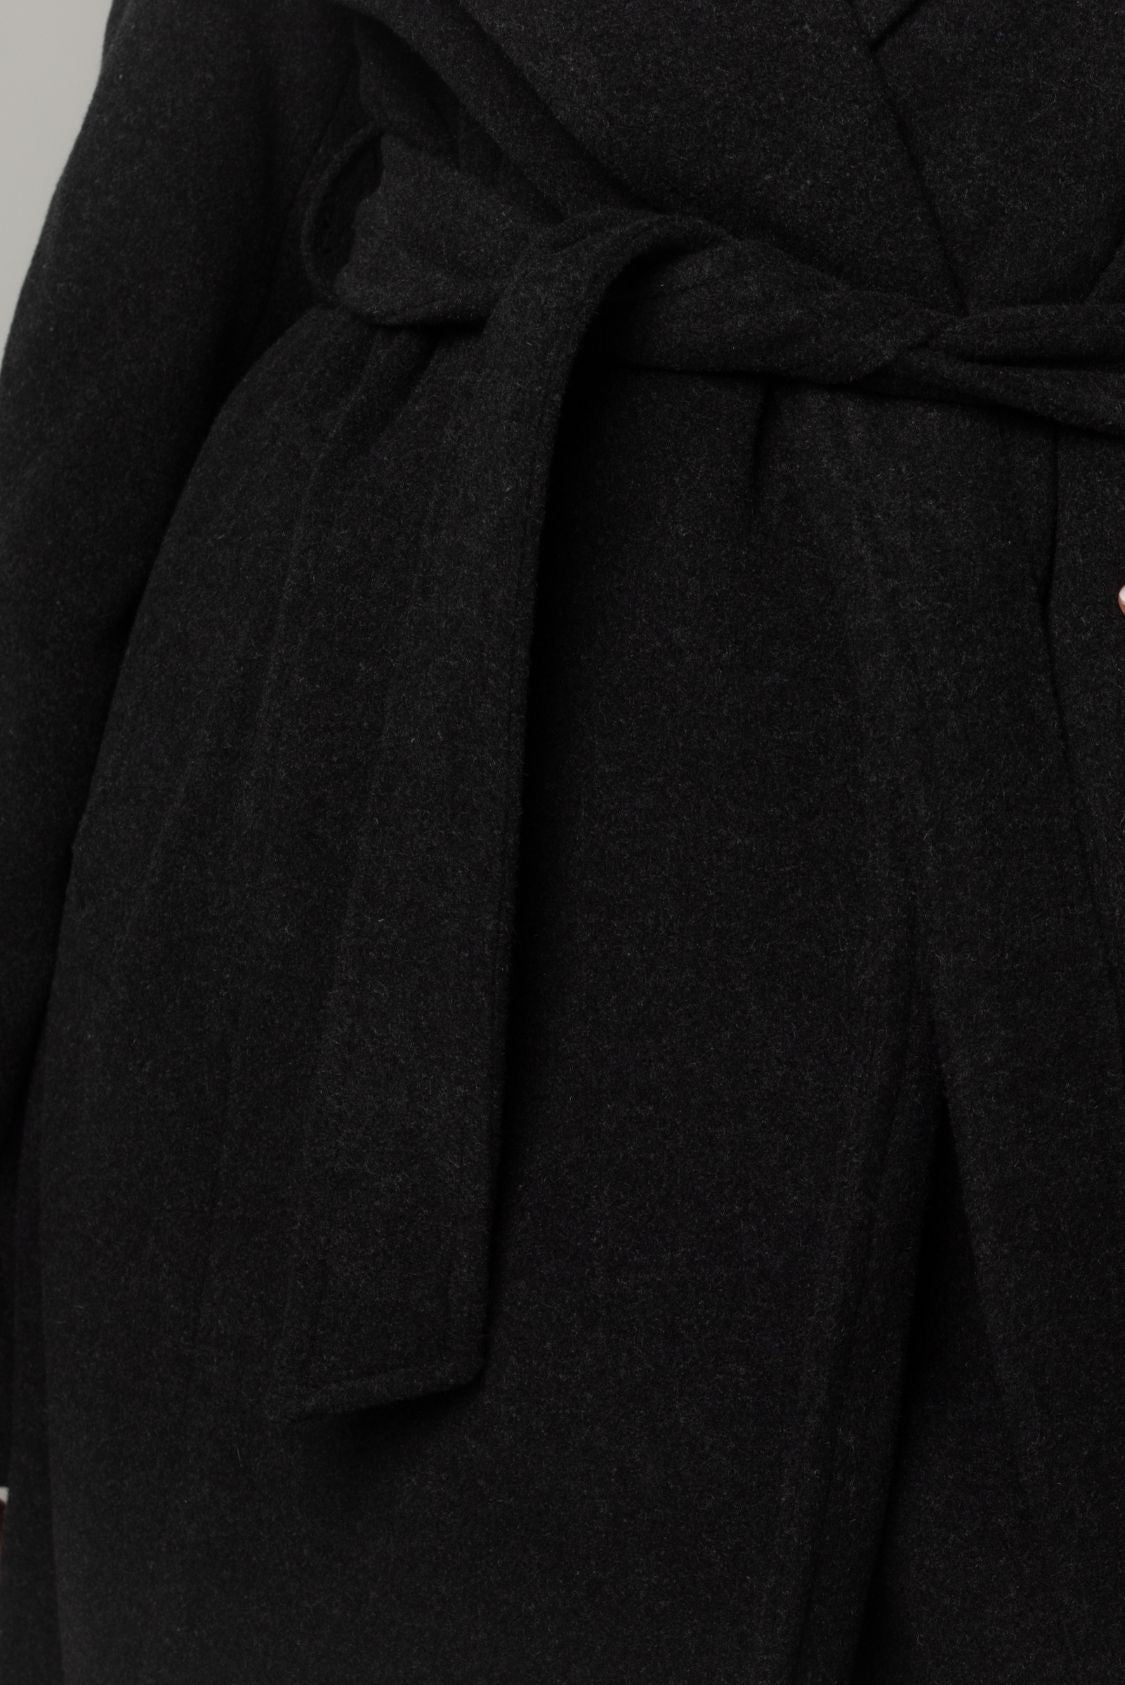 Długi płaszcz szlafrokowy z paskiem, 100% wełna, ciemny grafit - Milano